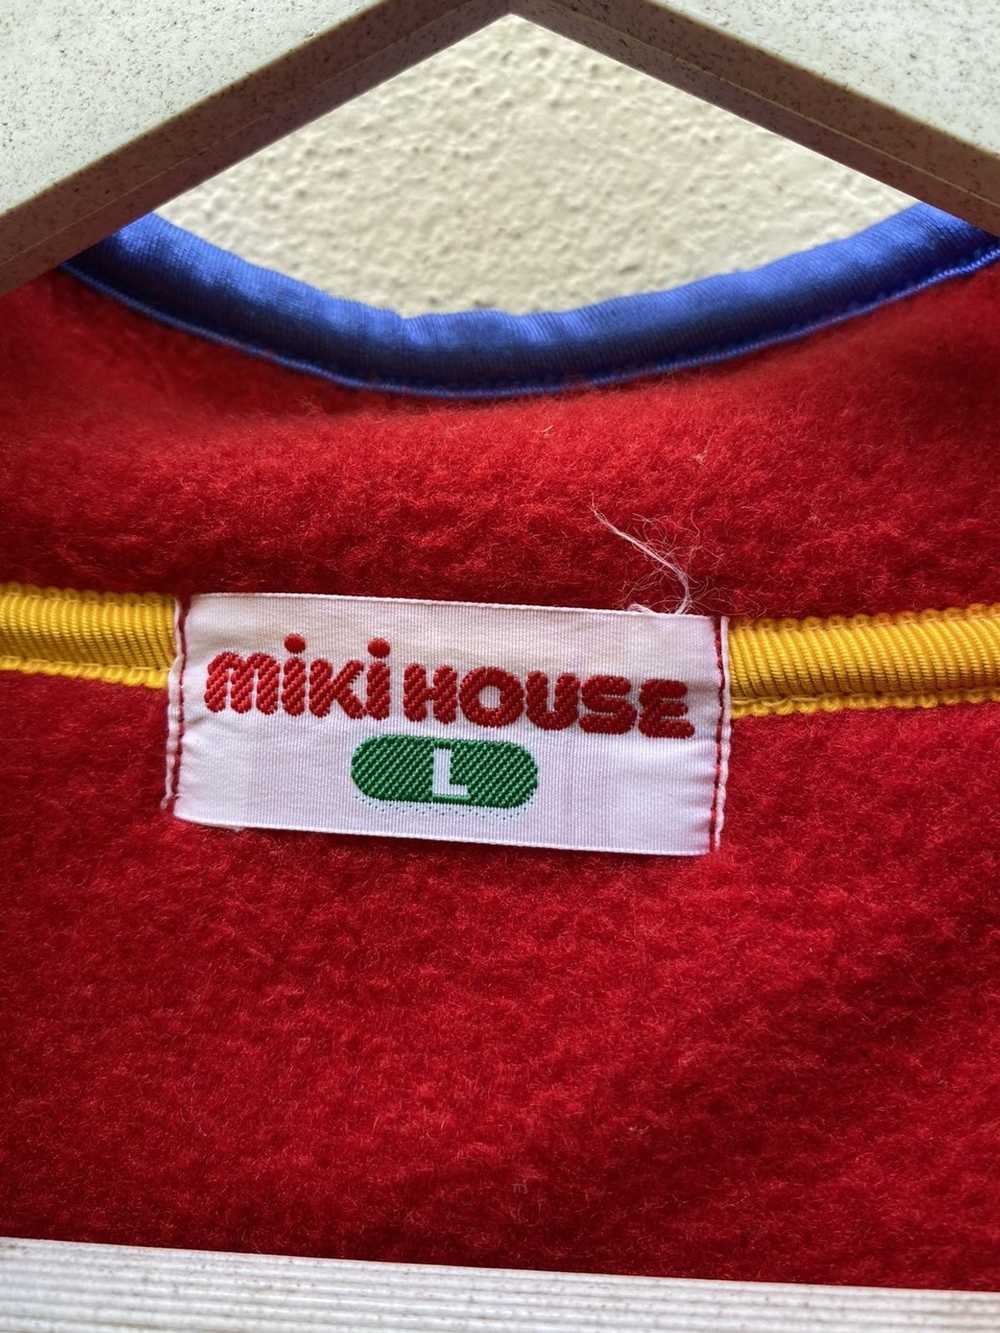 Japanese Brand Miki house fleece sweatshirt - image 5